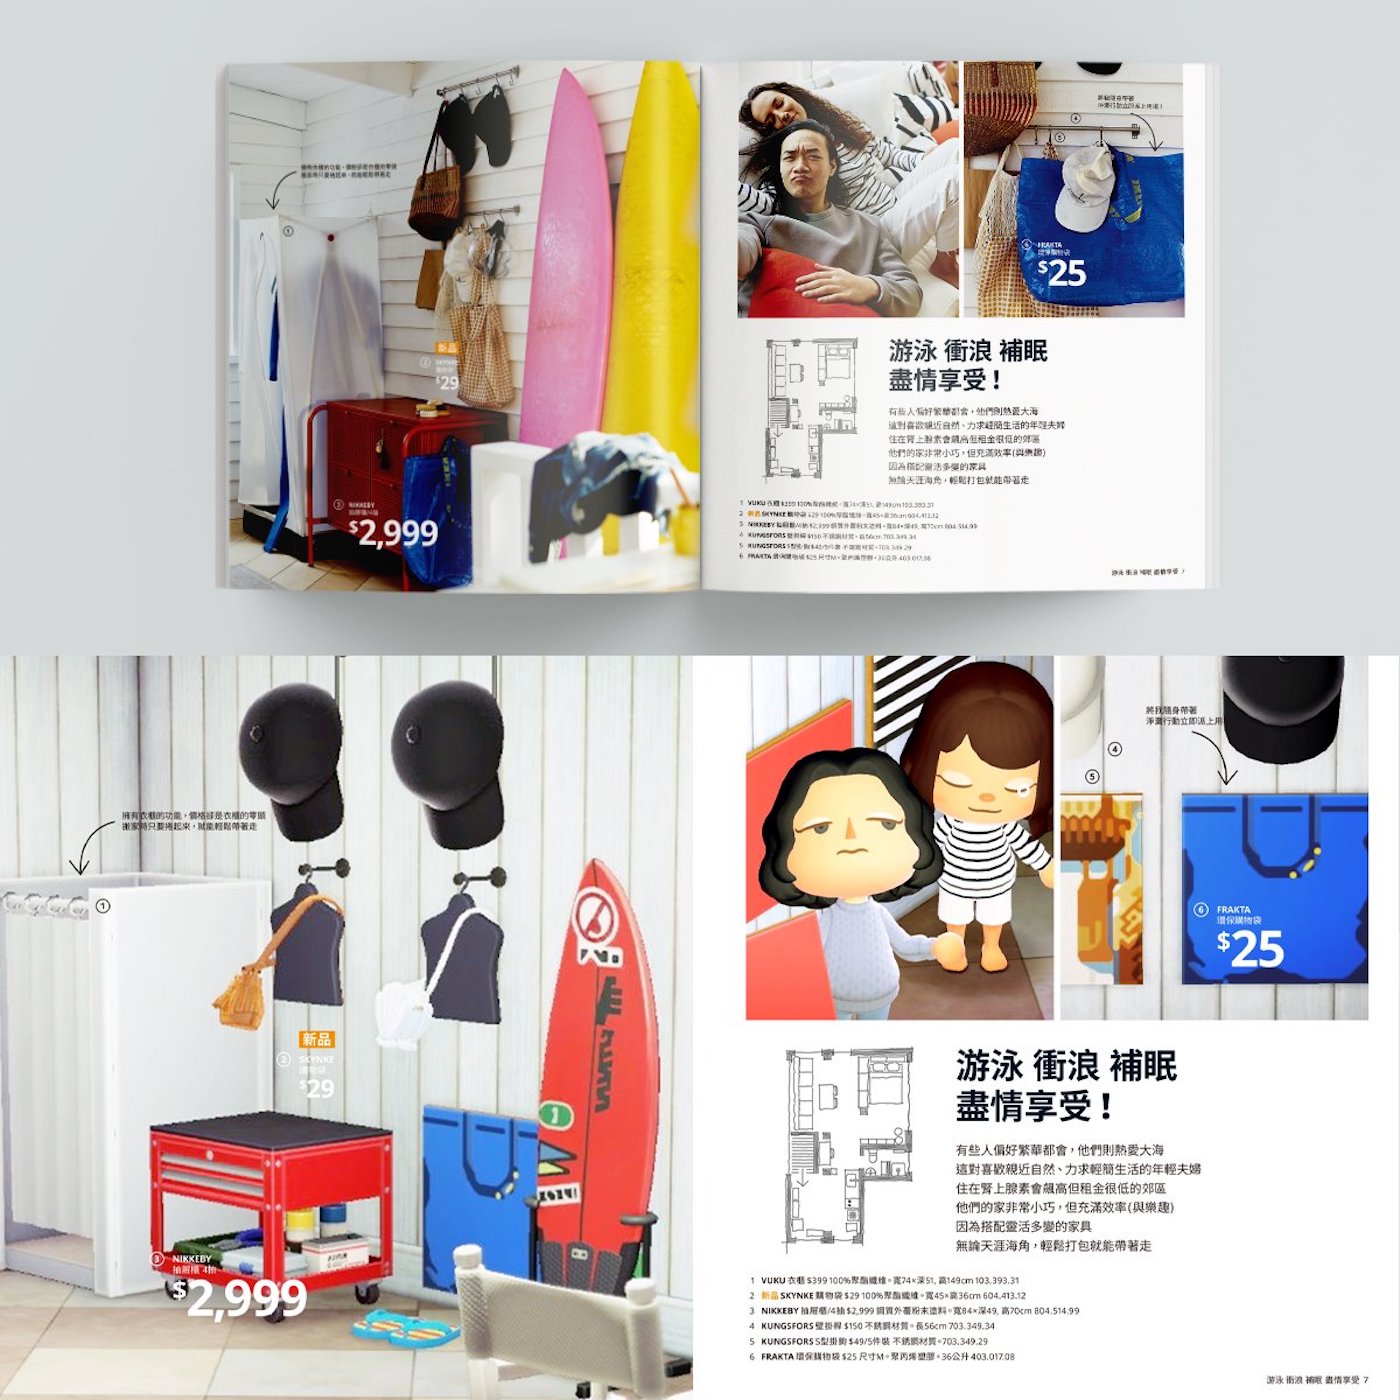 IKEA a recréé l'intégralité de son catalogue façon "Animal Crossing"